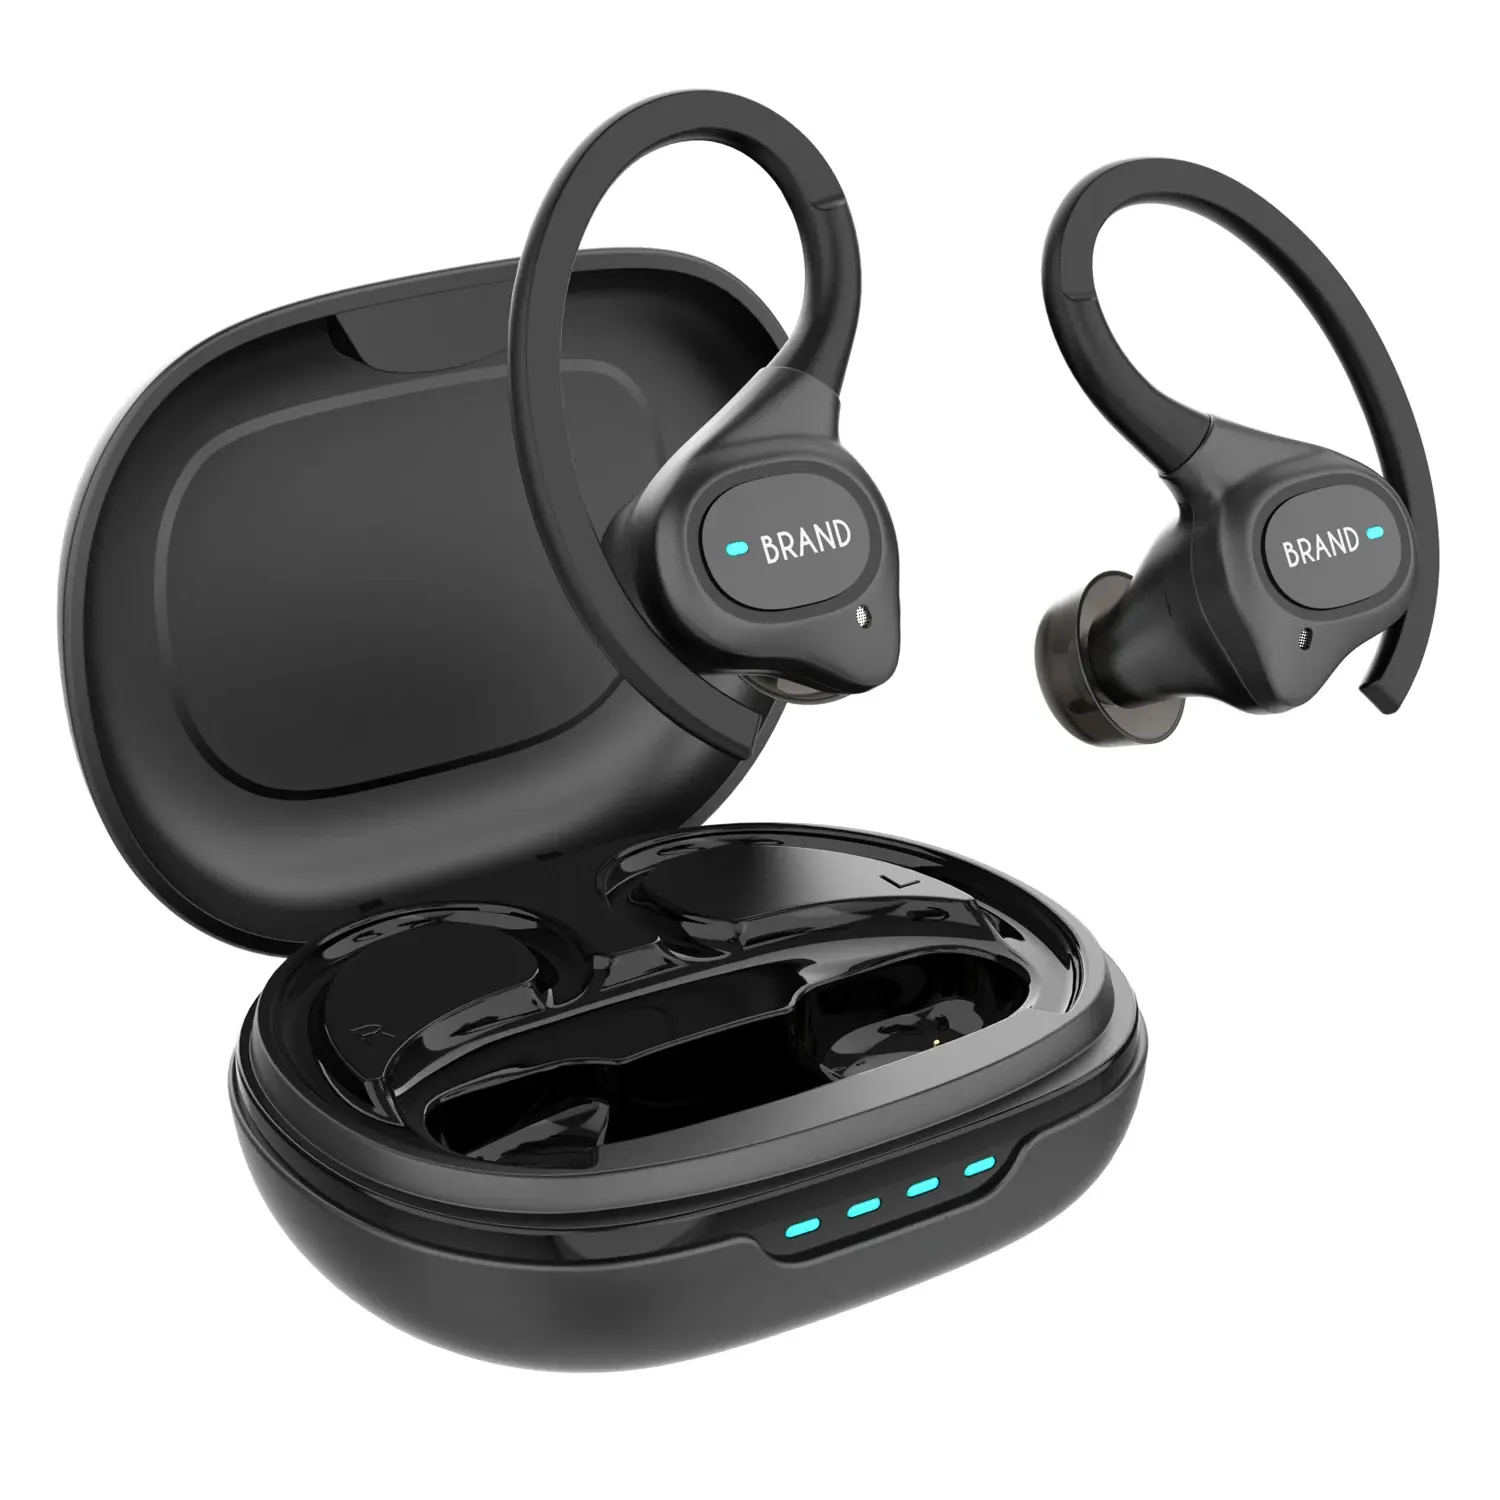 تصميم جديد إلغاء الضوضاء سماعة بلوتوث Audifonos يدوية مجانية مع سماعات رأس لاسلكية TWS داخل الأذن